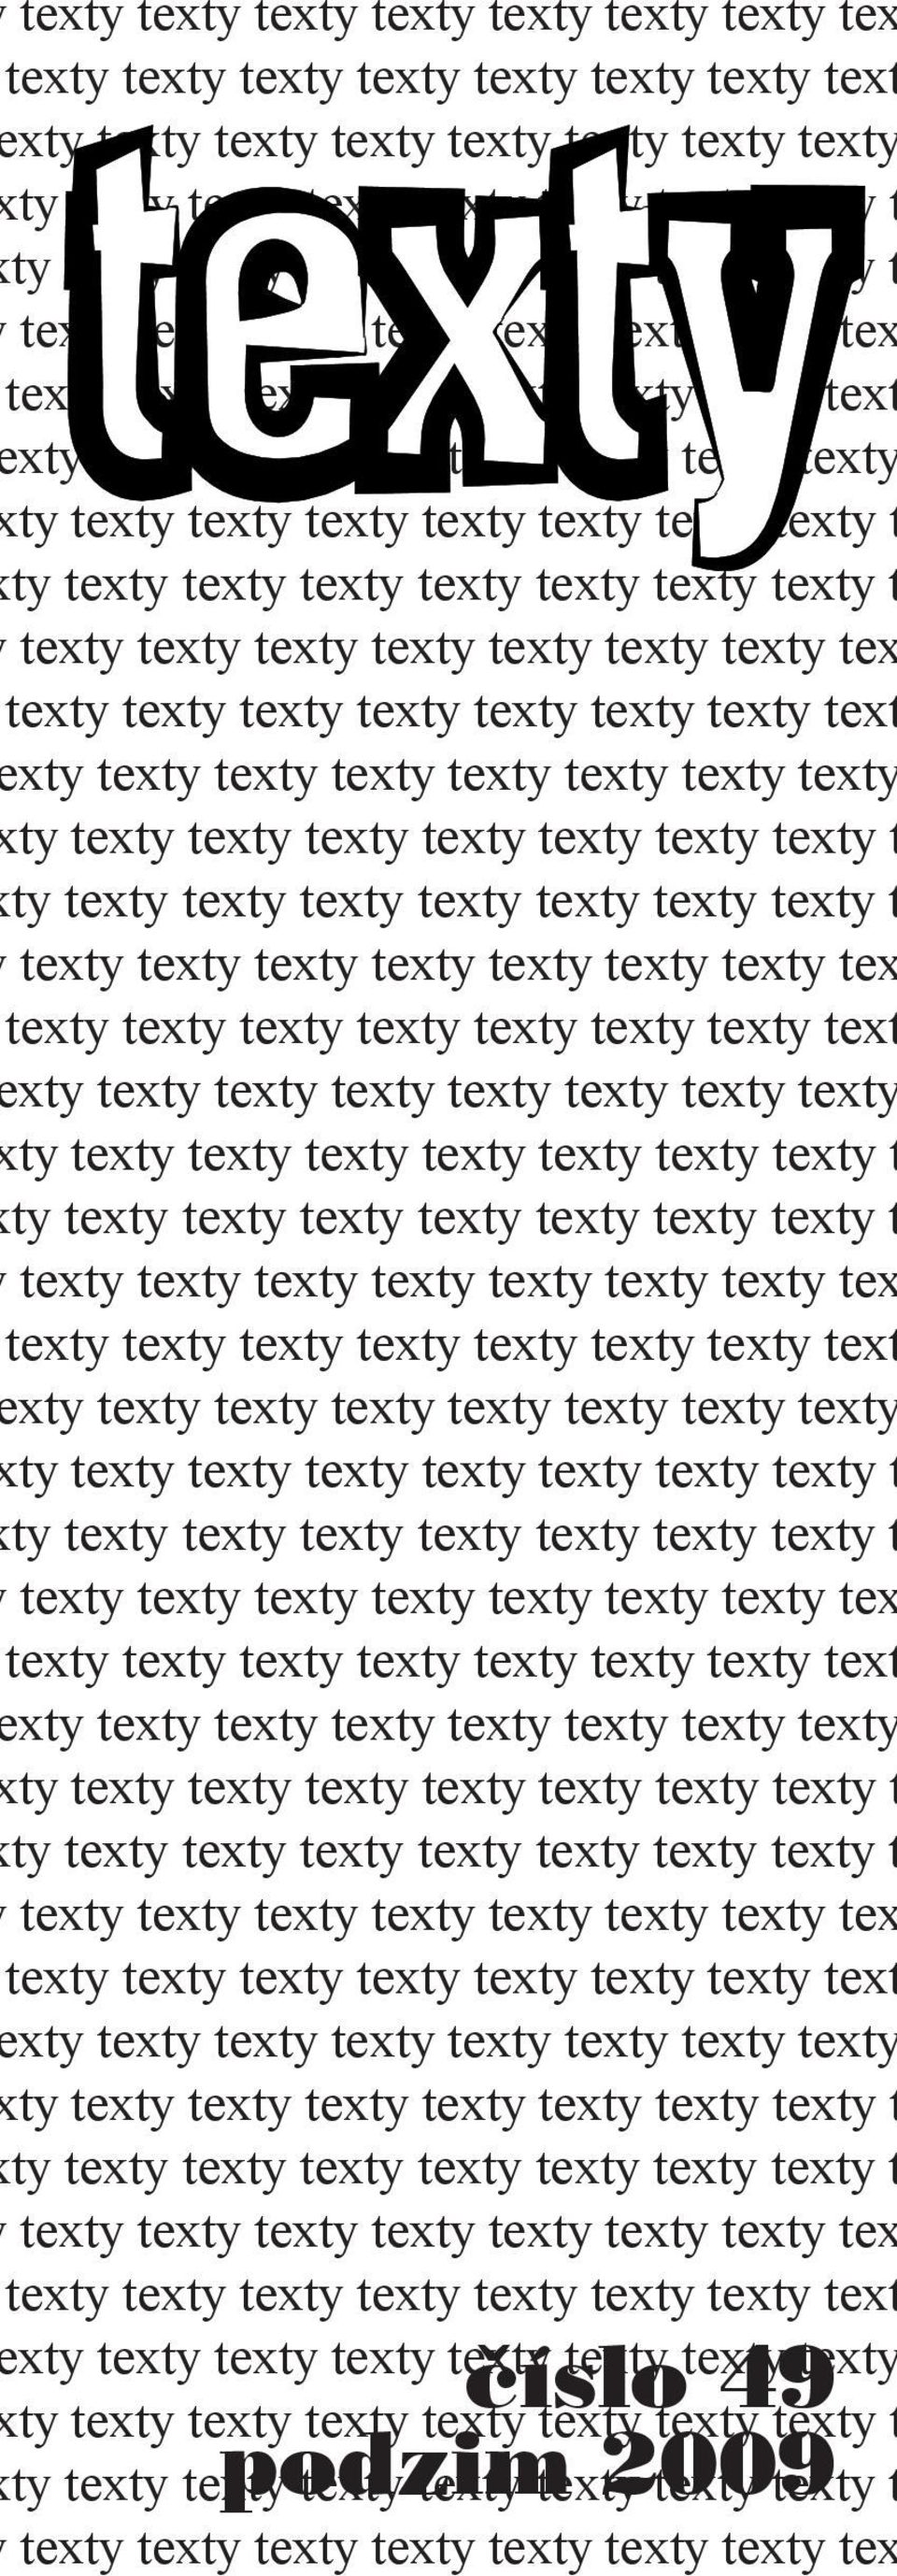 xty texty texty texty texty texty texty texty  texty texty texty texty texty text xty texty texty texty texty texty texty texty číslo 49 ty texty texty podzim texty texty 1 texty 2009 texty texty t